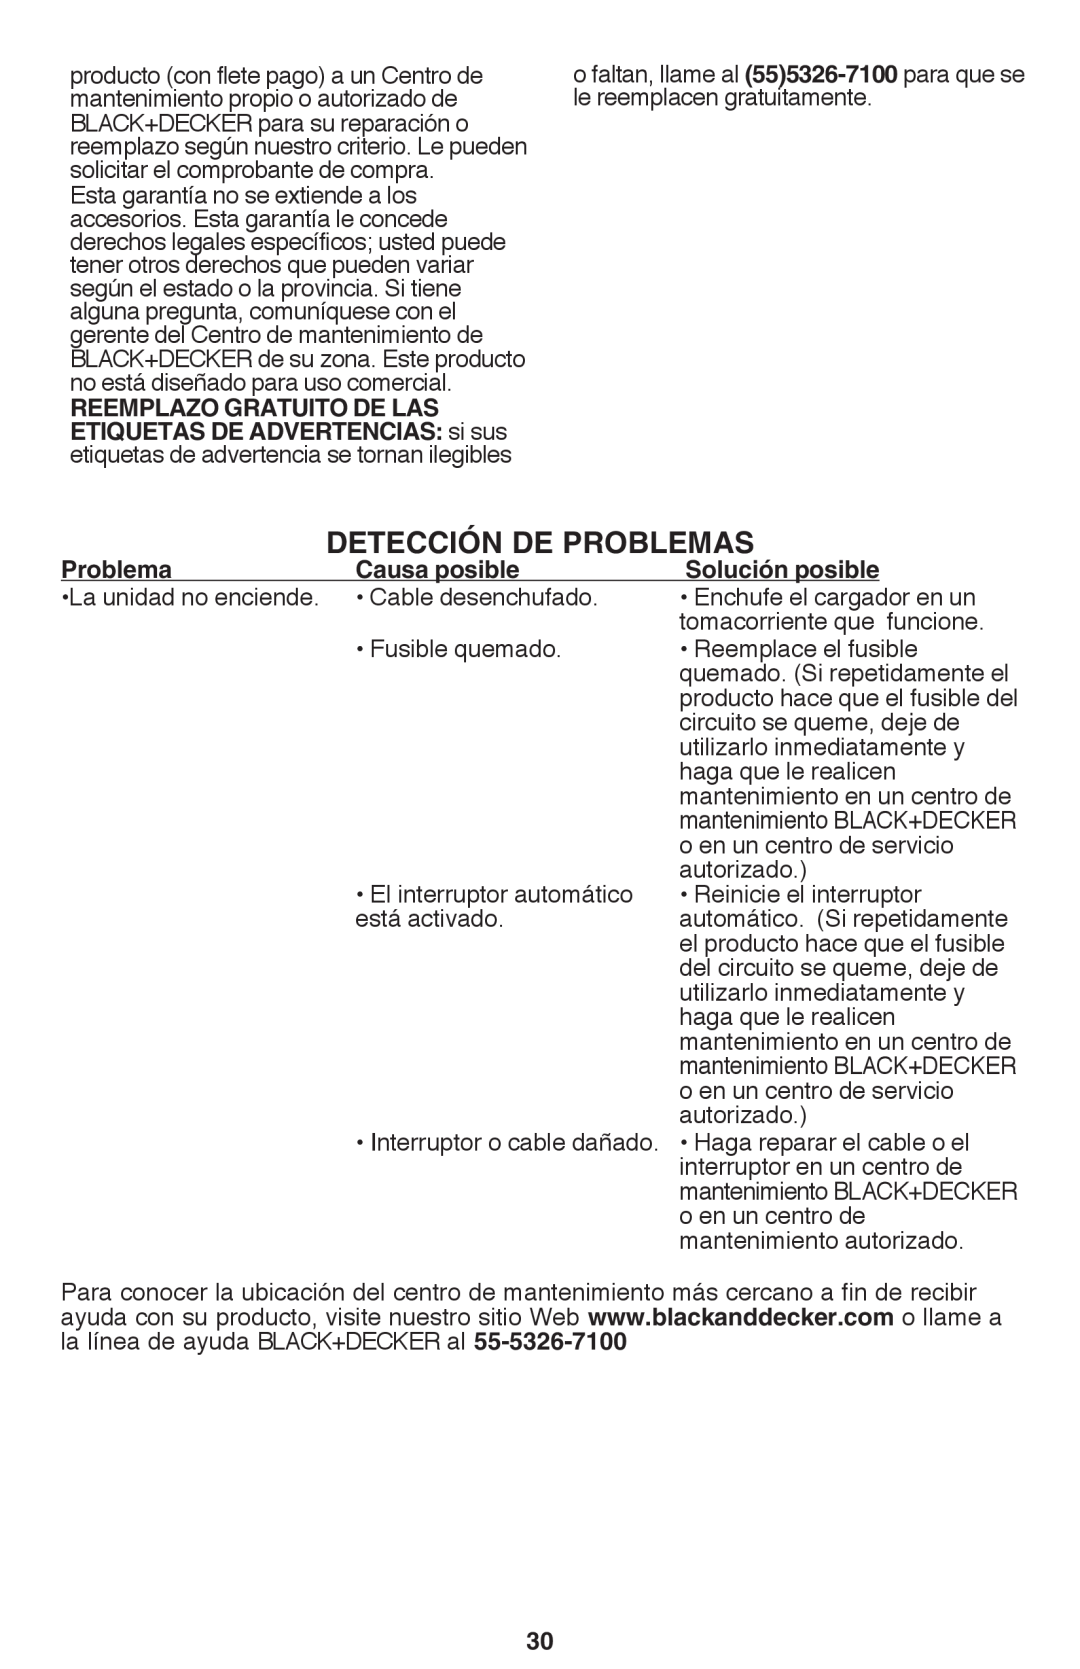 Black & Decker CS1015 Detección de problemas, Reemplazo gratuito de las, etiquetas de advertencias si sus, Problema 